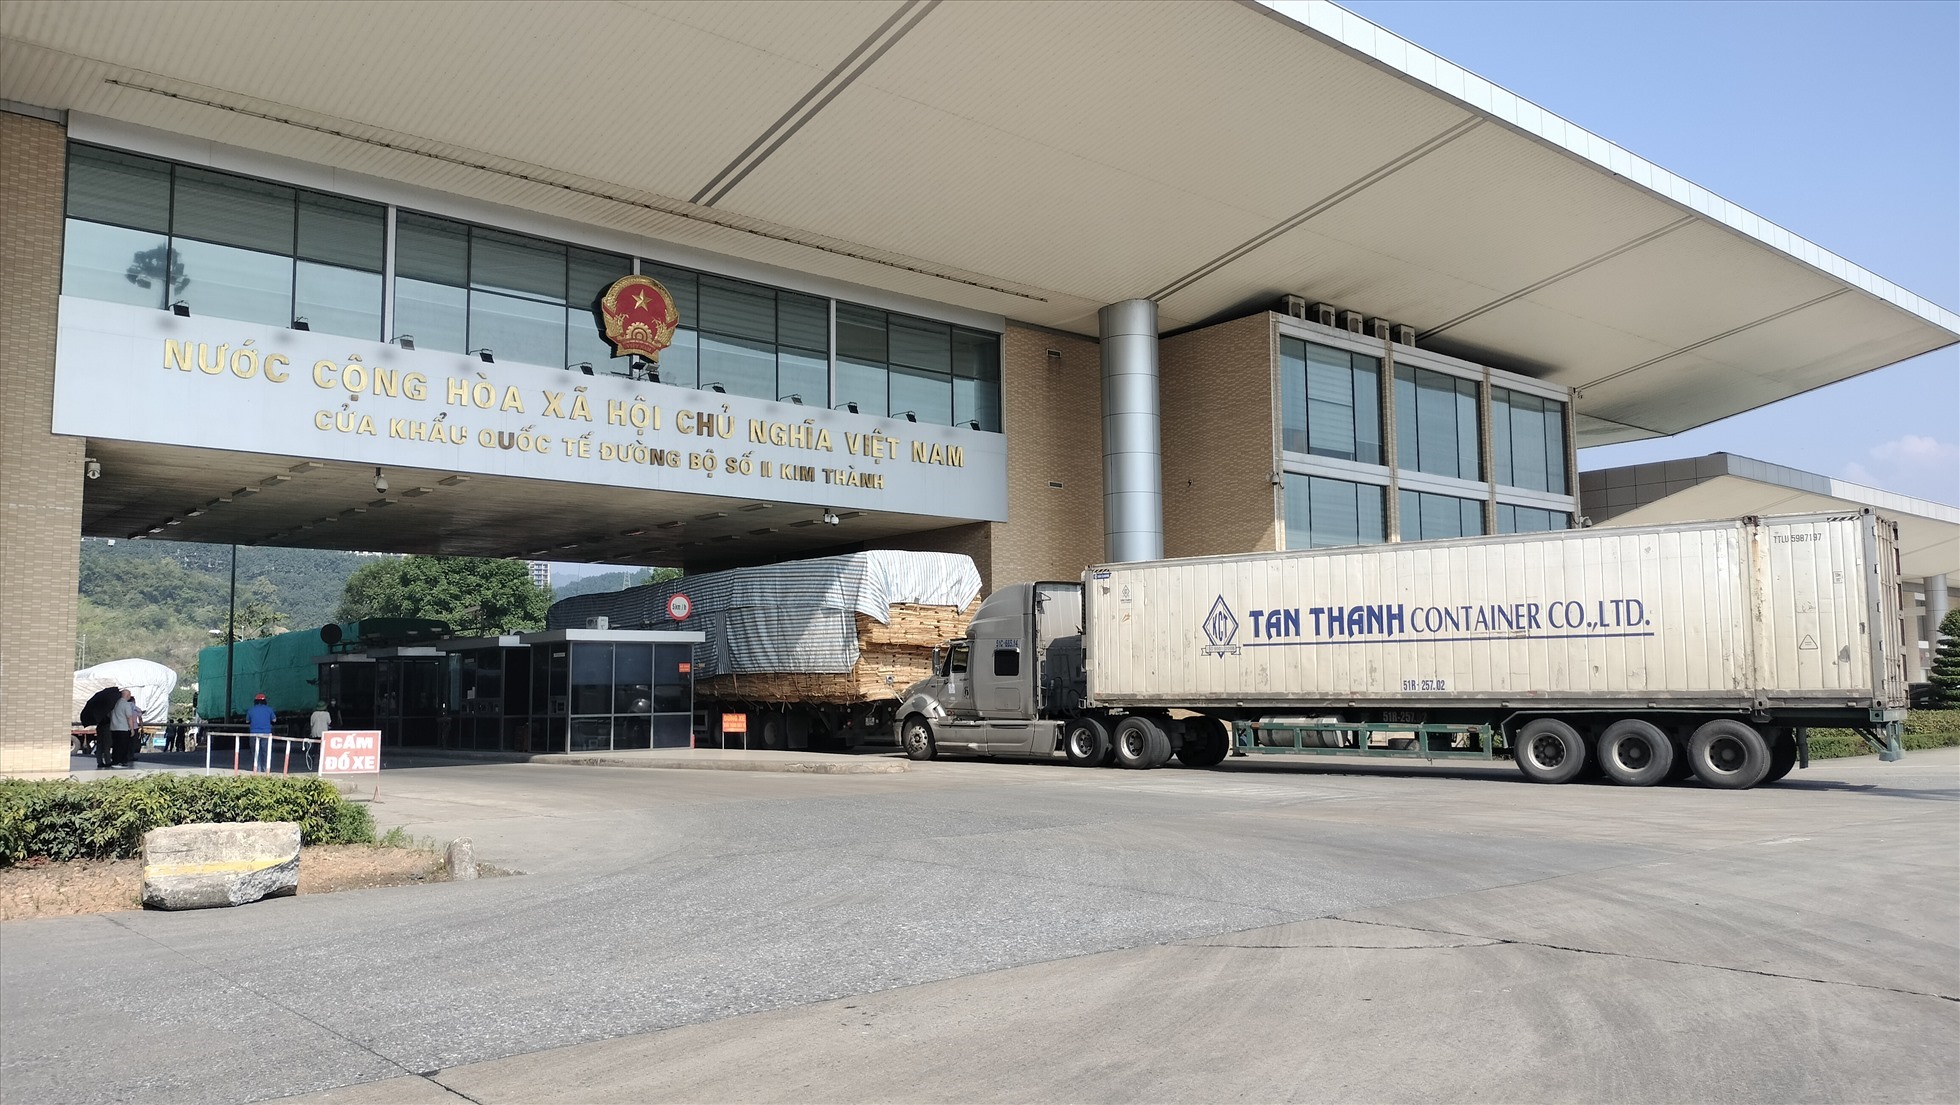 Cửa khẩu biên giới Việt - Trung tại Lào Cai dự kiến mở cửa hoàn toàn từ 1.1.2023. Ảnh: Văn Đức.